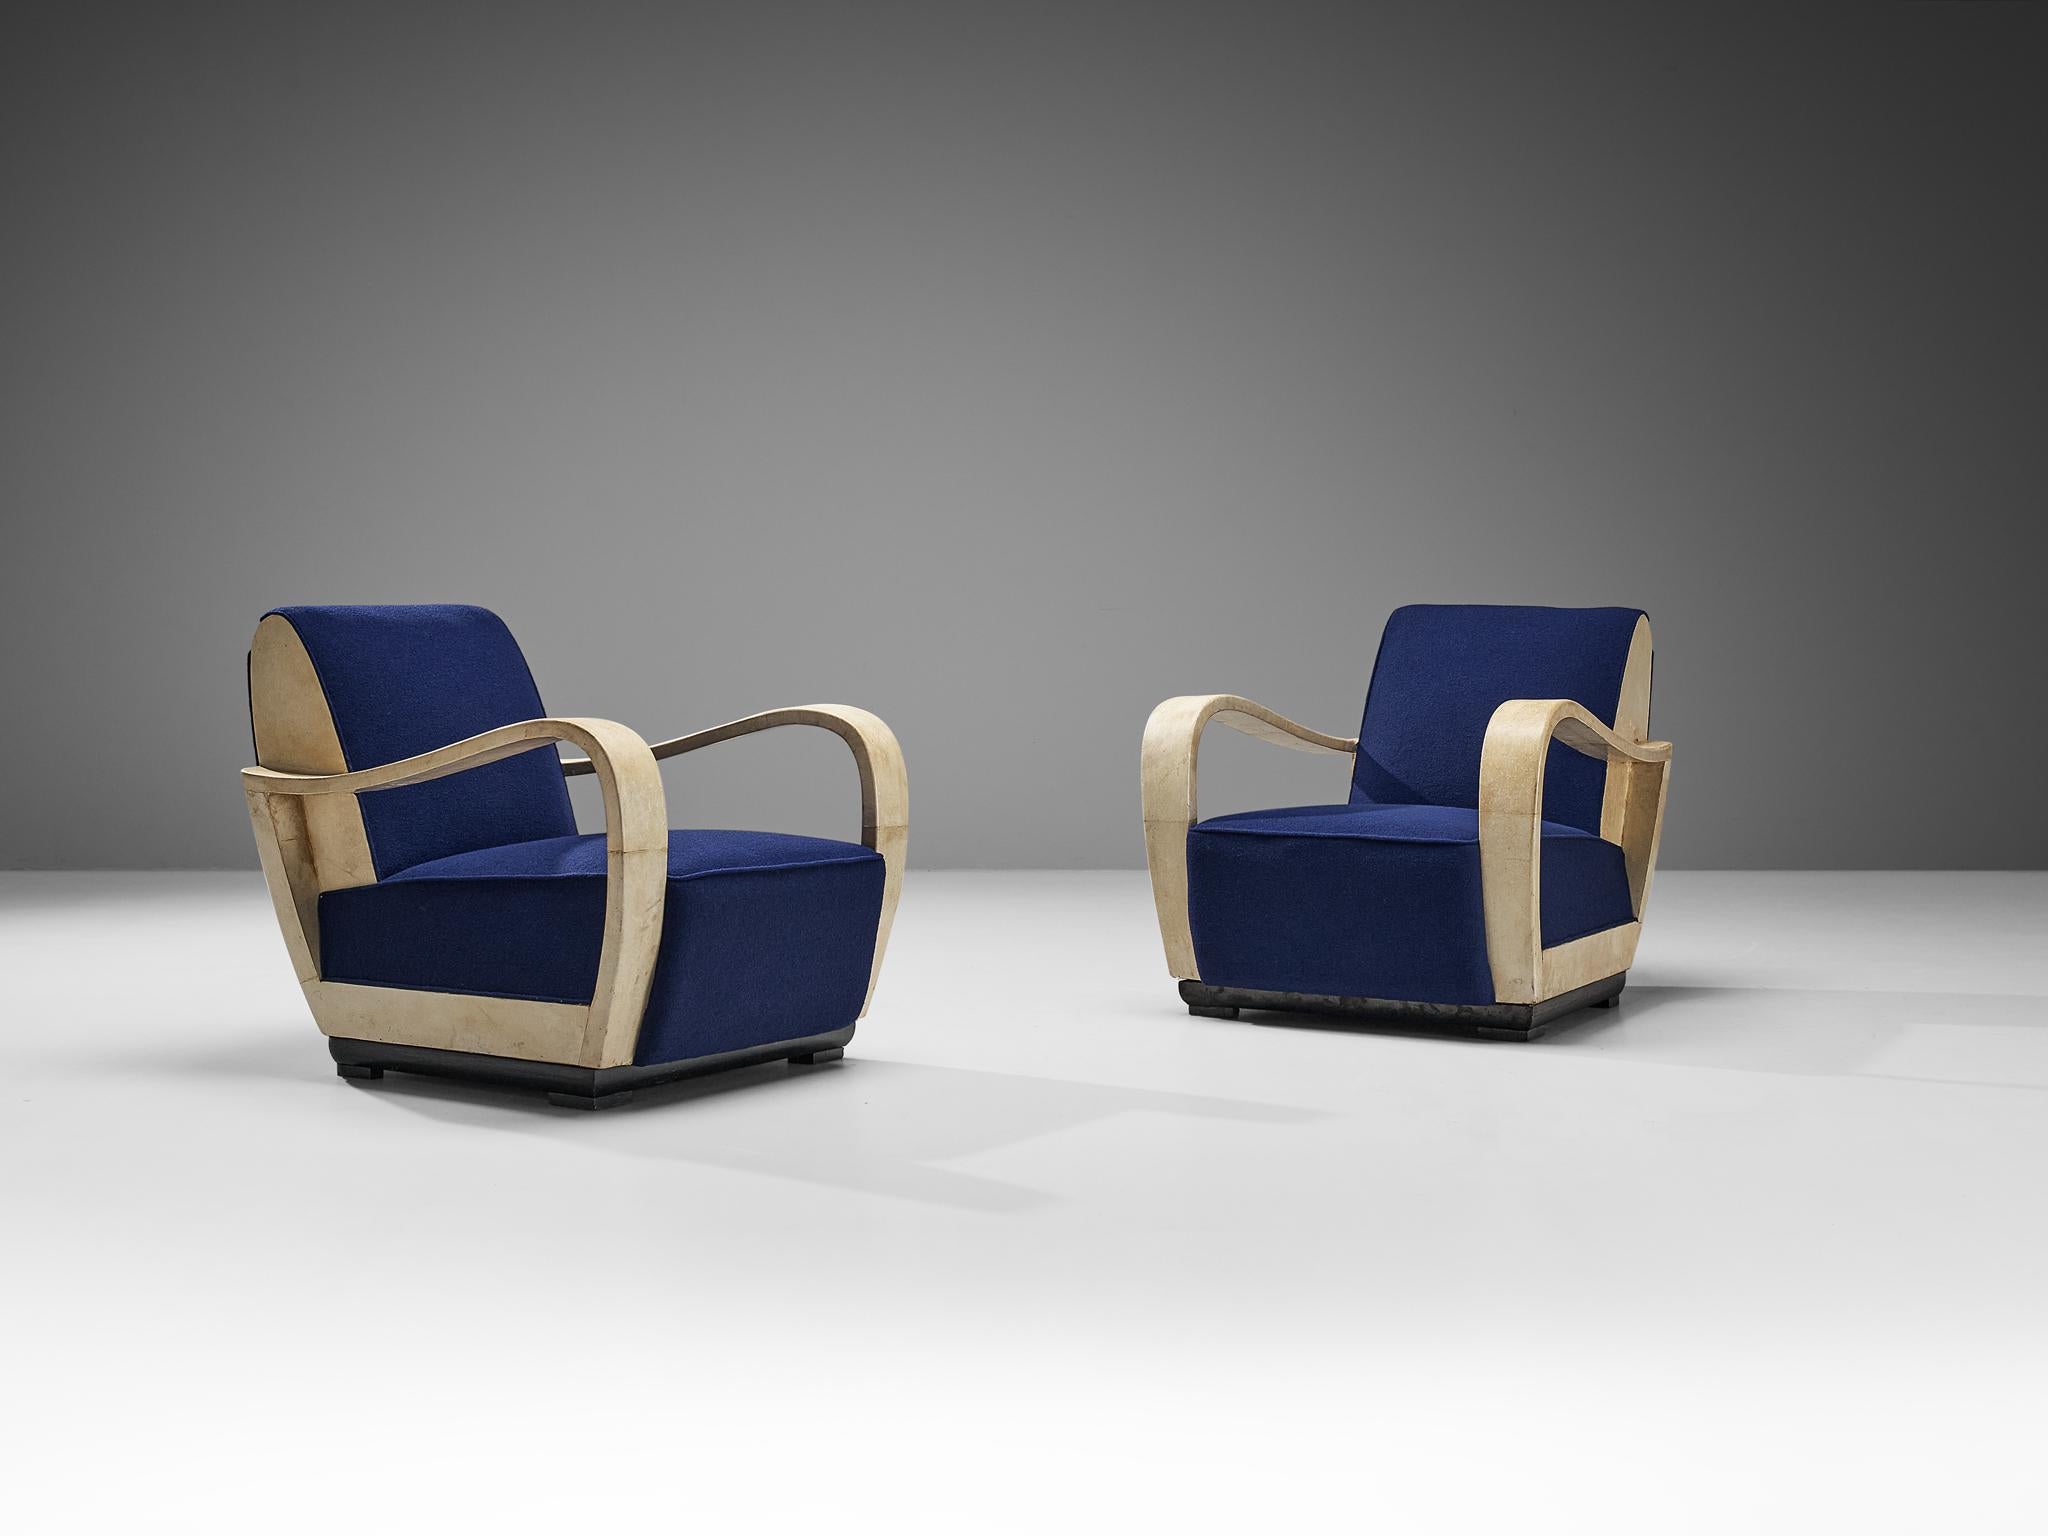 Valzania, Paar Liegestühle, Pergament, Stoff, lackiertes Holz, Italien, um 1940

Dieses exquisite Sesselpaar wurde von Valzania um 1940 hergestellt. Dieser Stuhl ist ein Unikat, sowohl in seinem Design als auch in der Verwendung der Materialien. Das